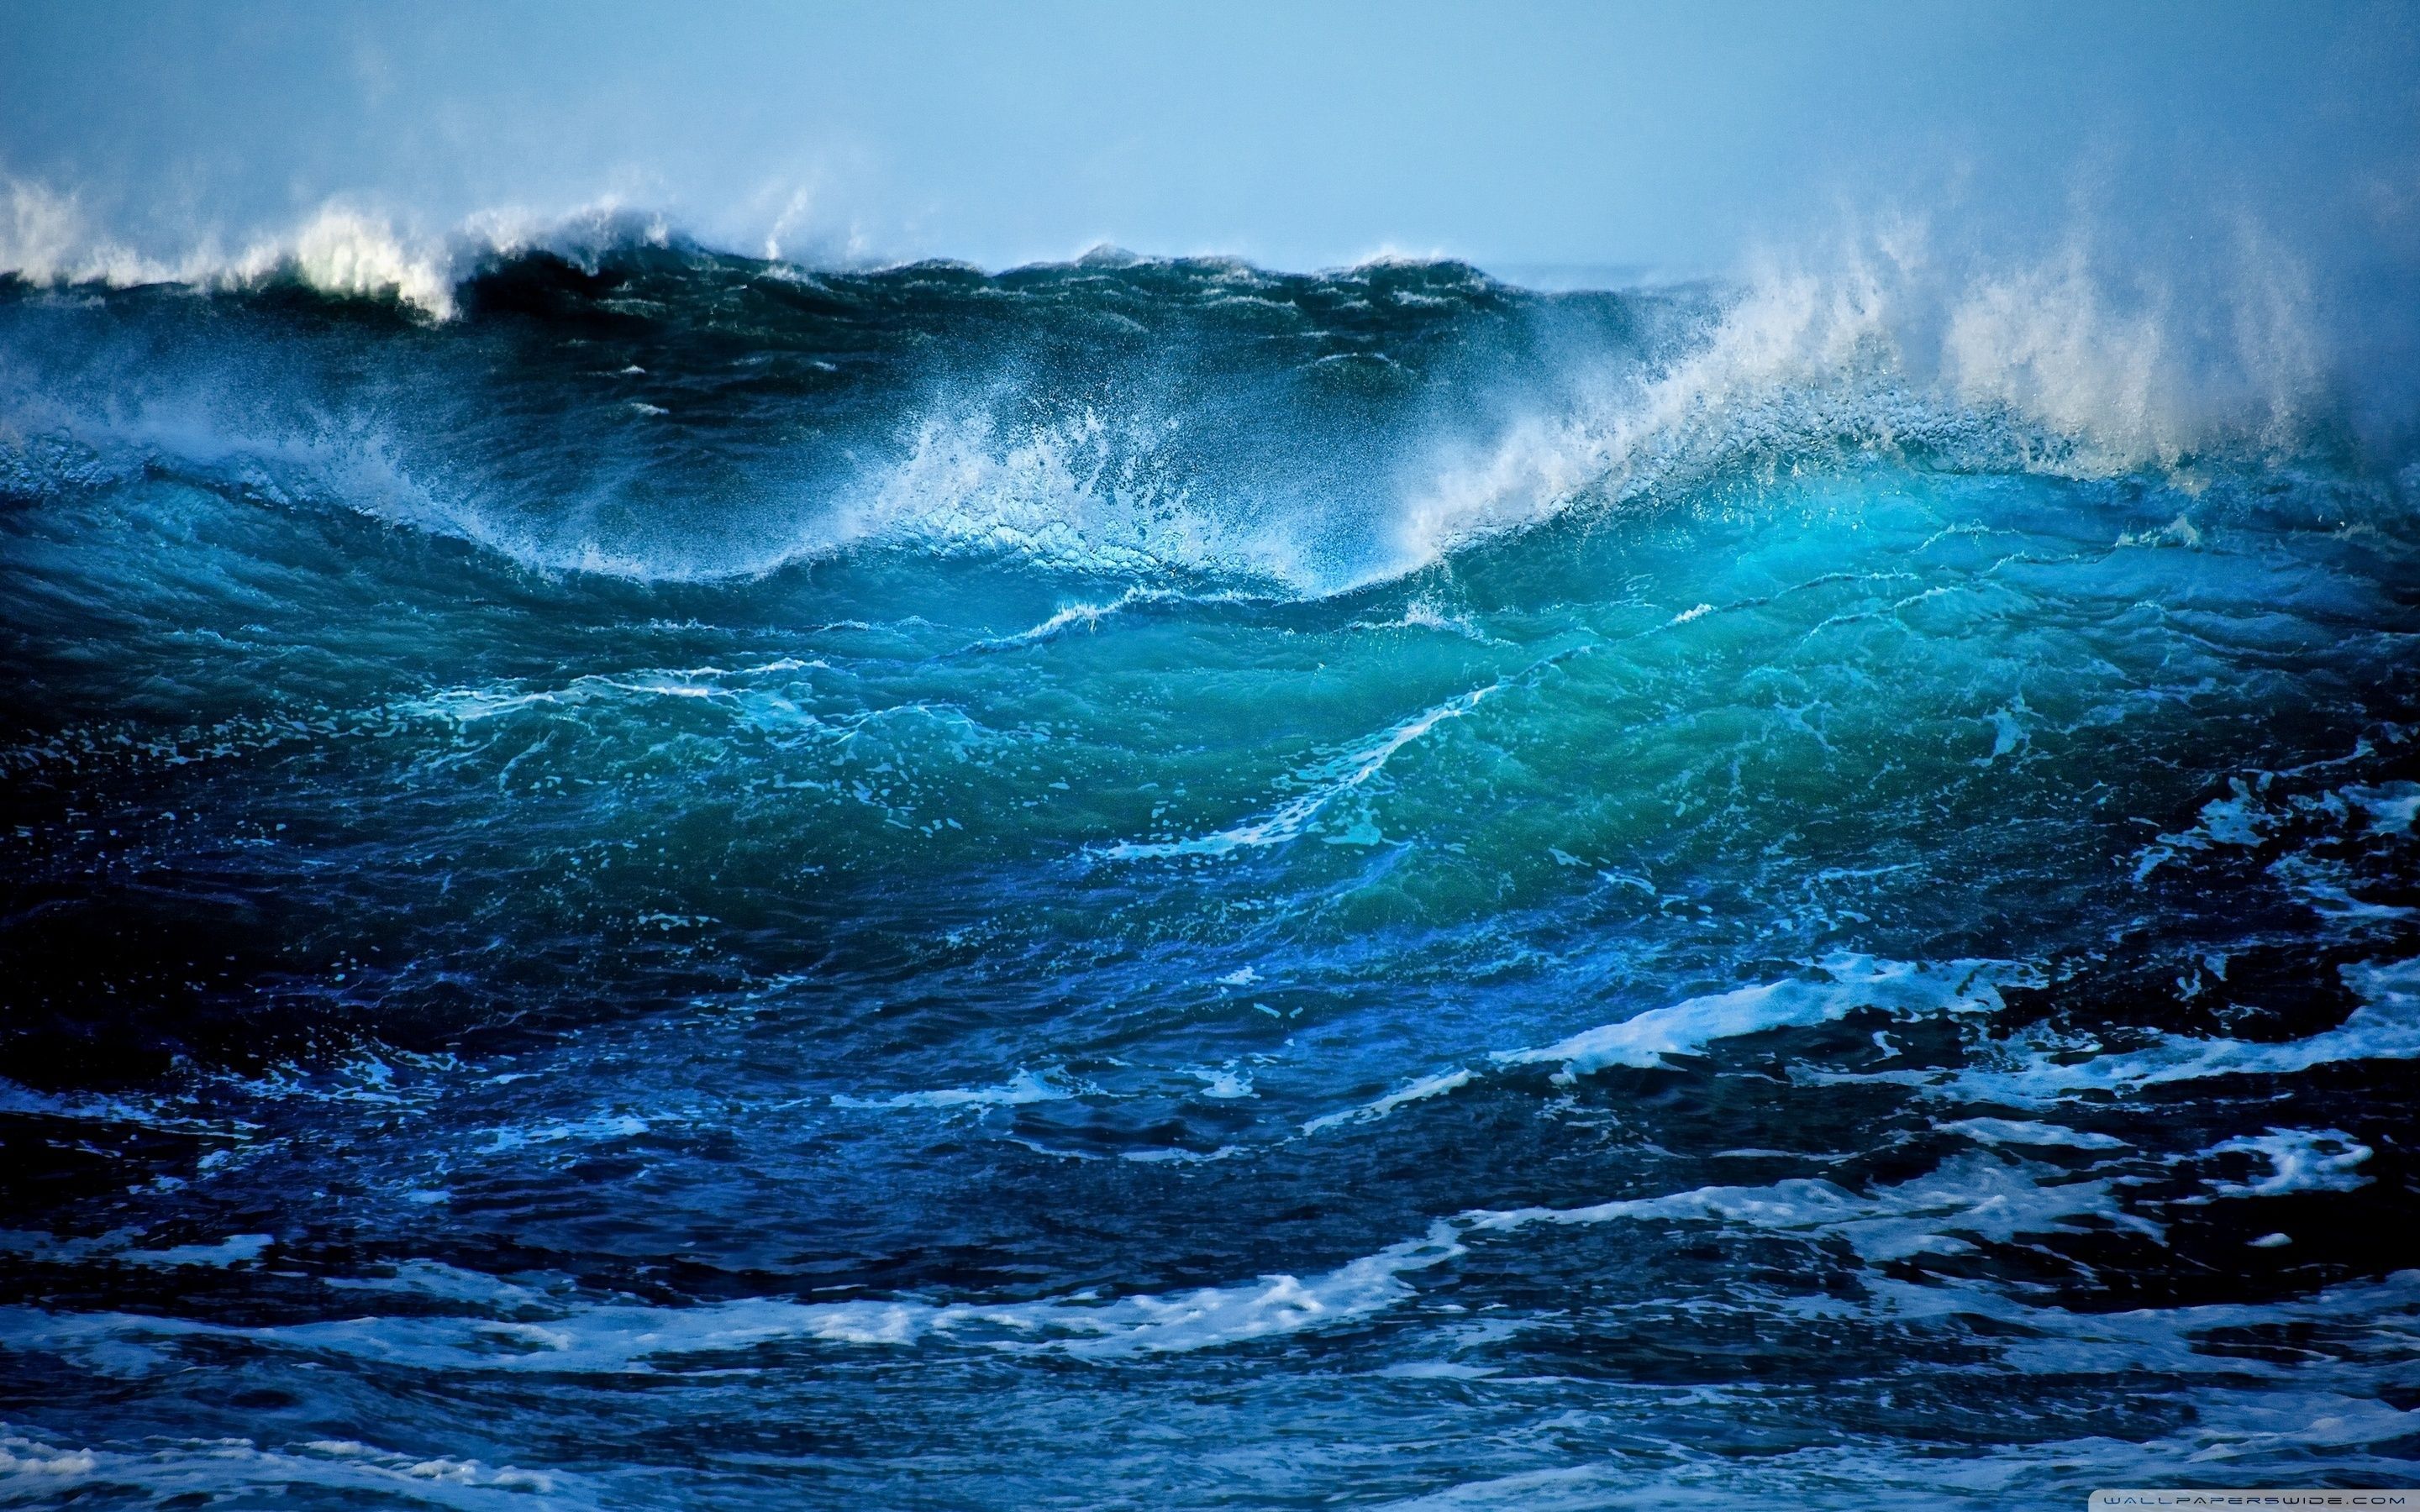 Wave HD desktop wallpaper Widescreen High Definition. Storm wallpaper, Waves wallpaper, Ocean storm